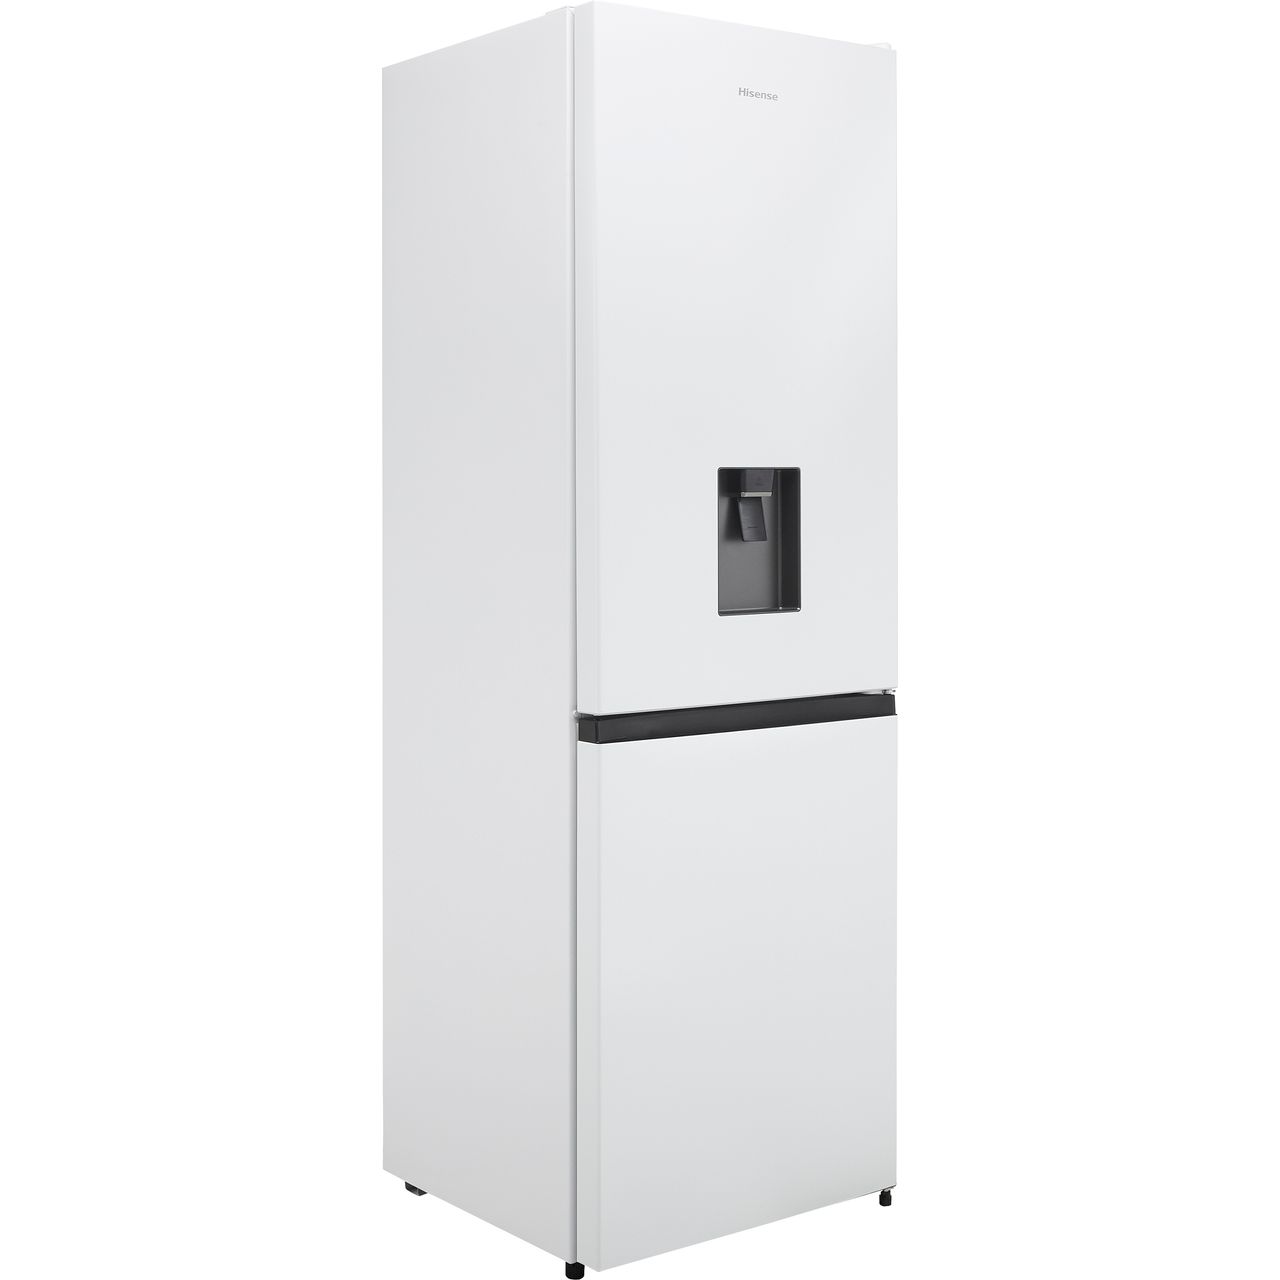 16+ Hisense vs beko fridge freezer ideas in 2021 